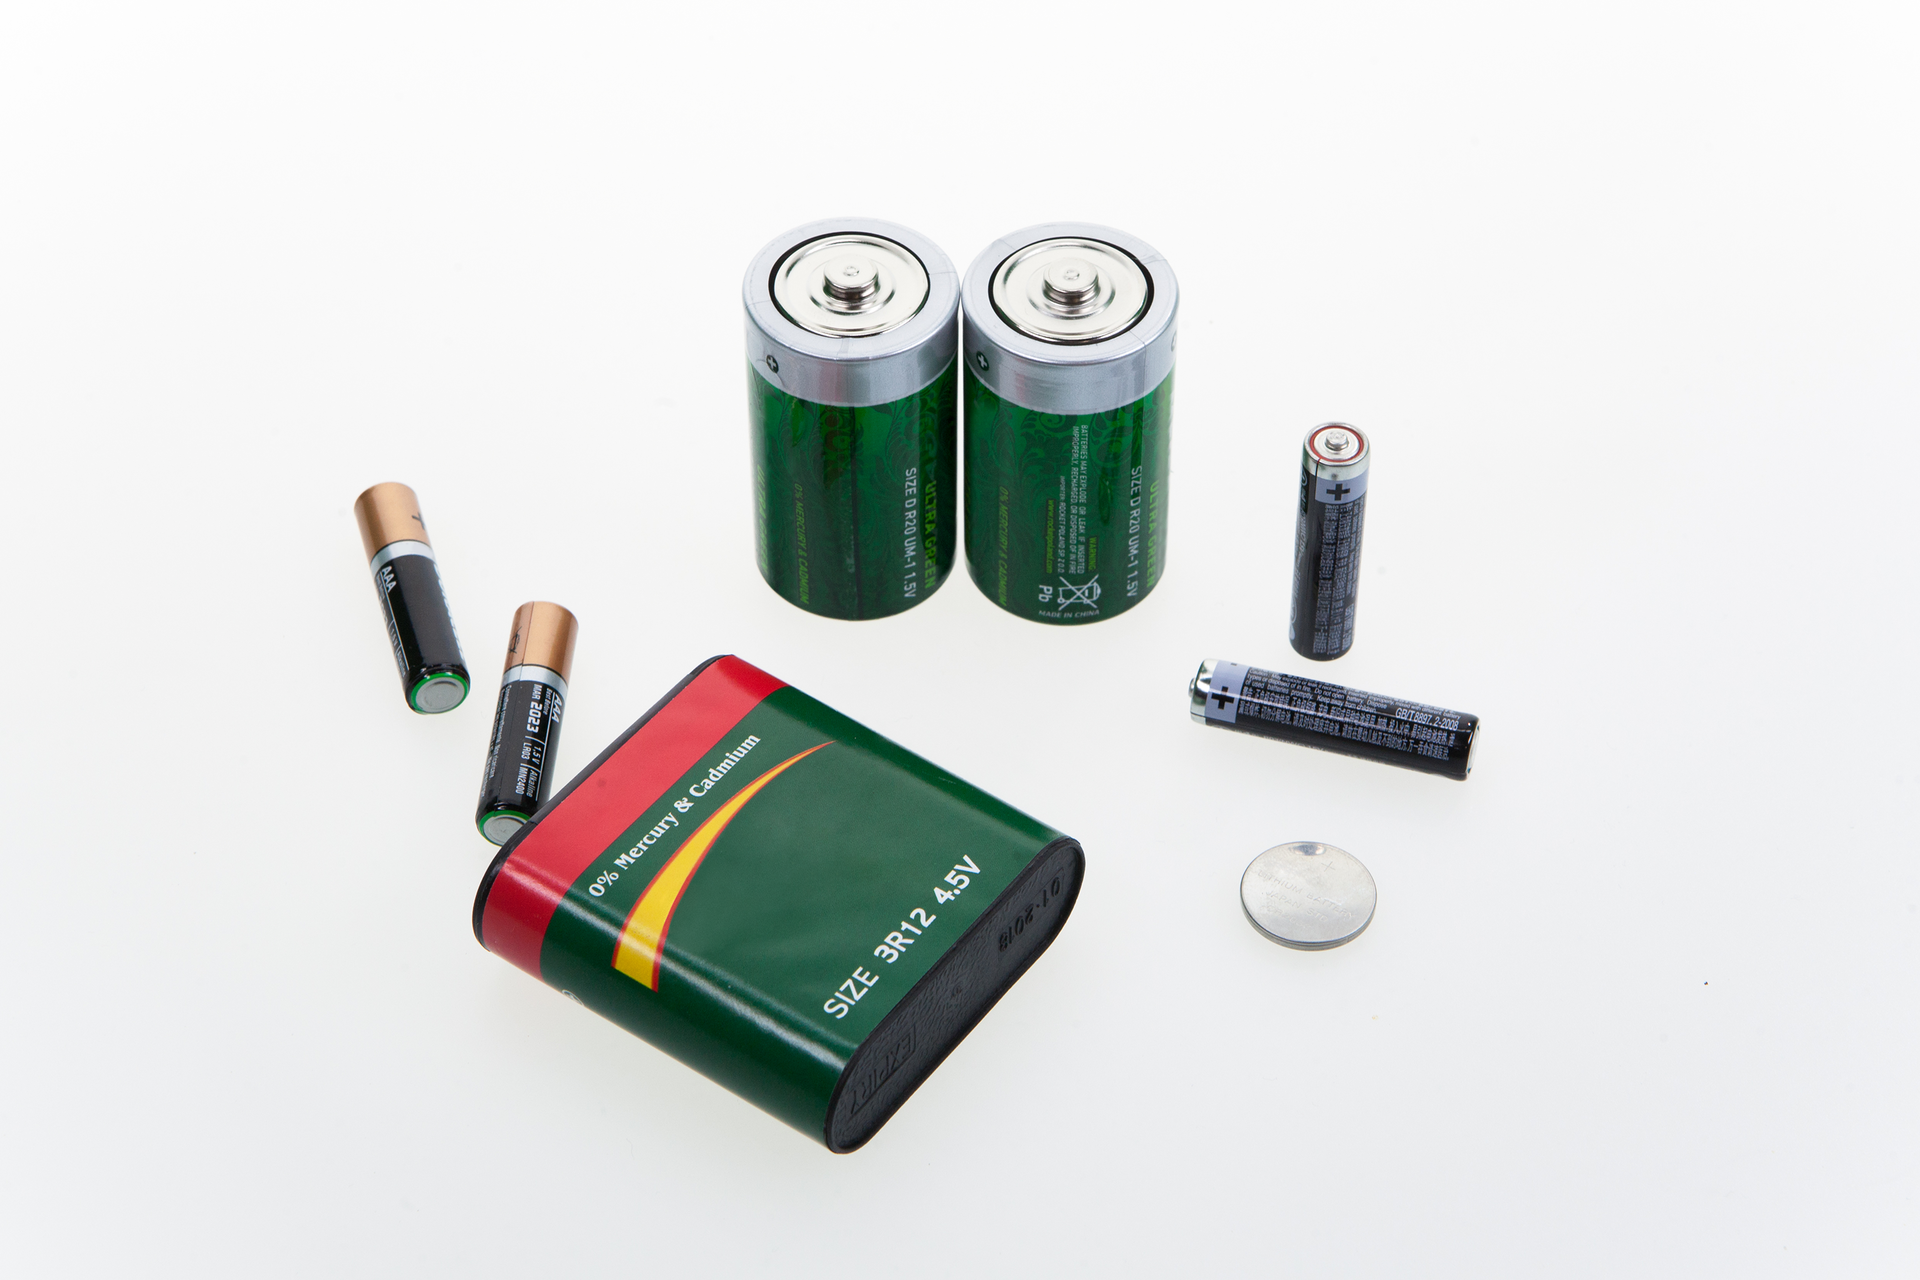 Zdjęcie przedstawia różnego rodzaju baterie na białym tle. Widać tu klasyczne paluszki, czyli baterie AA i AAA, większe baterie R20 i baterię płaską starego typu, a także baterię typu mini do kalkulatorów i innych małych urządzeń.